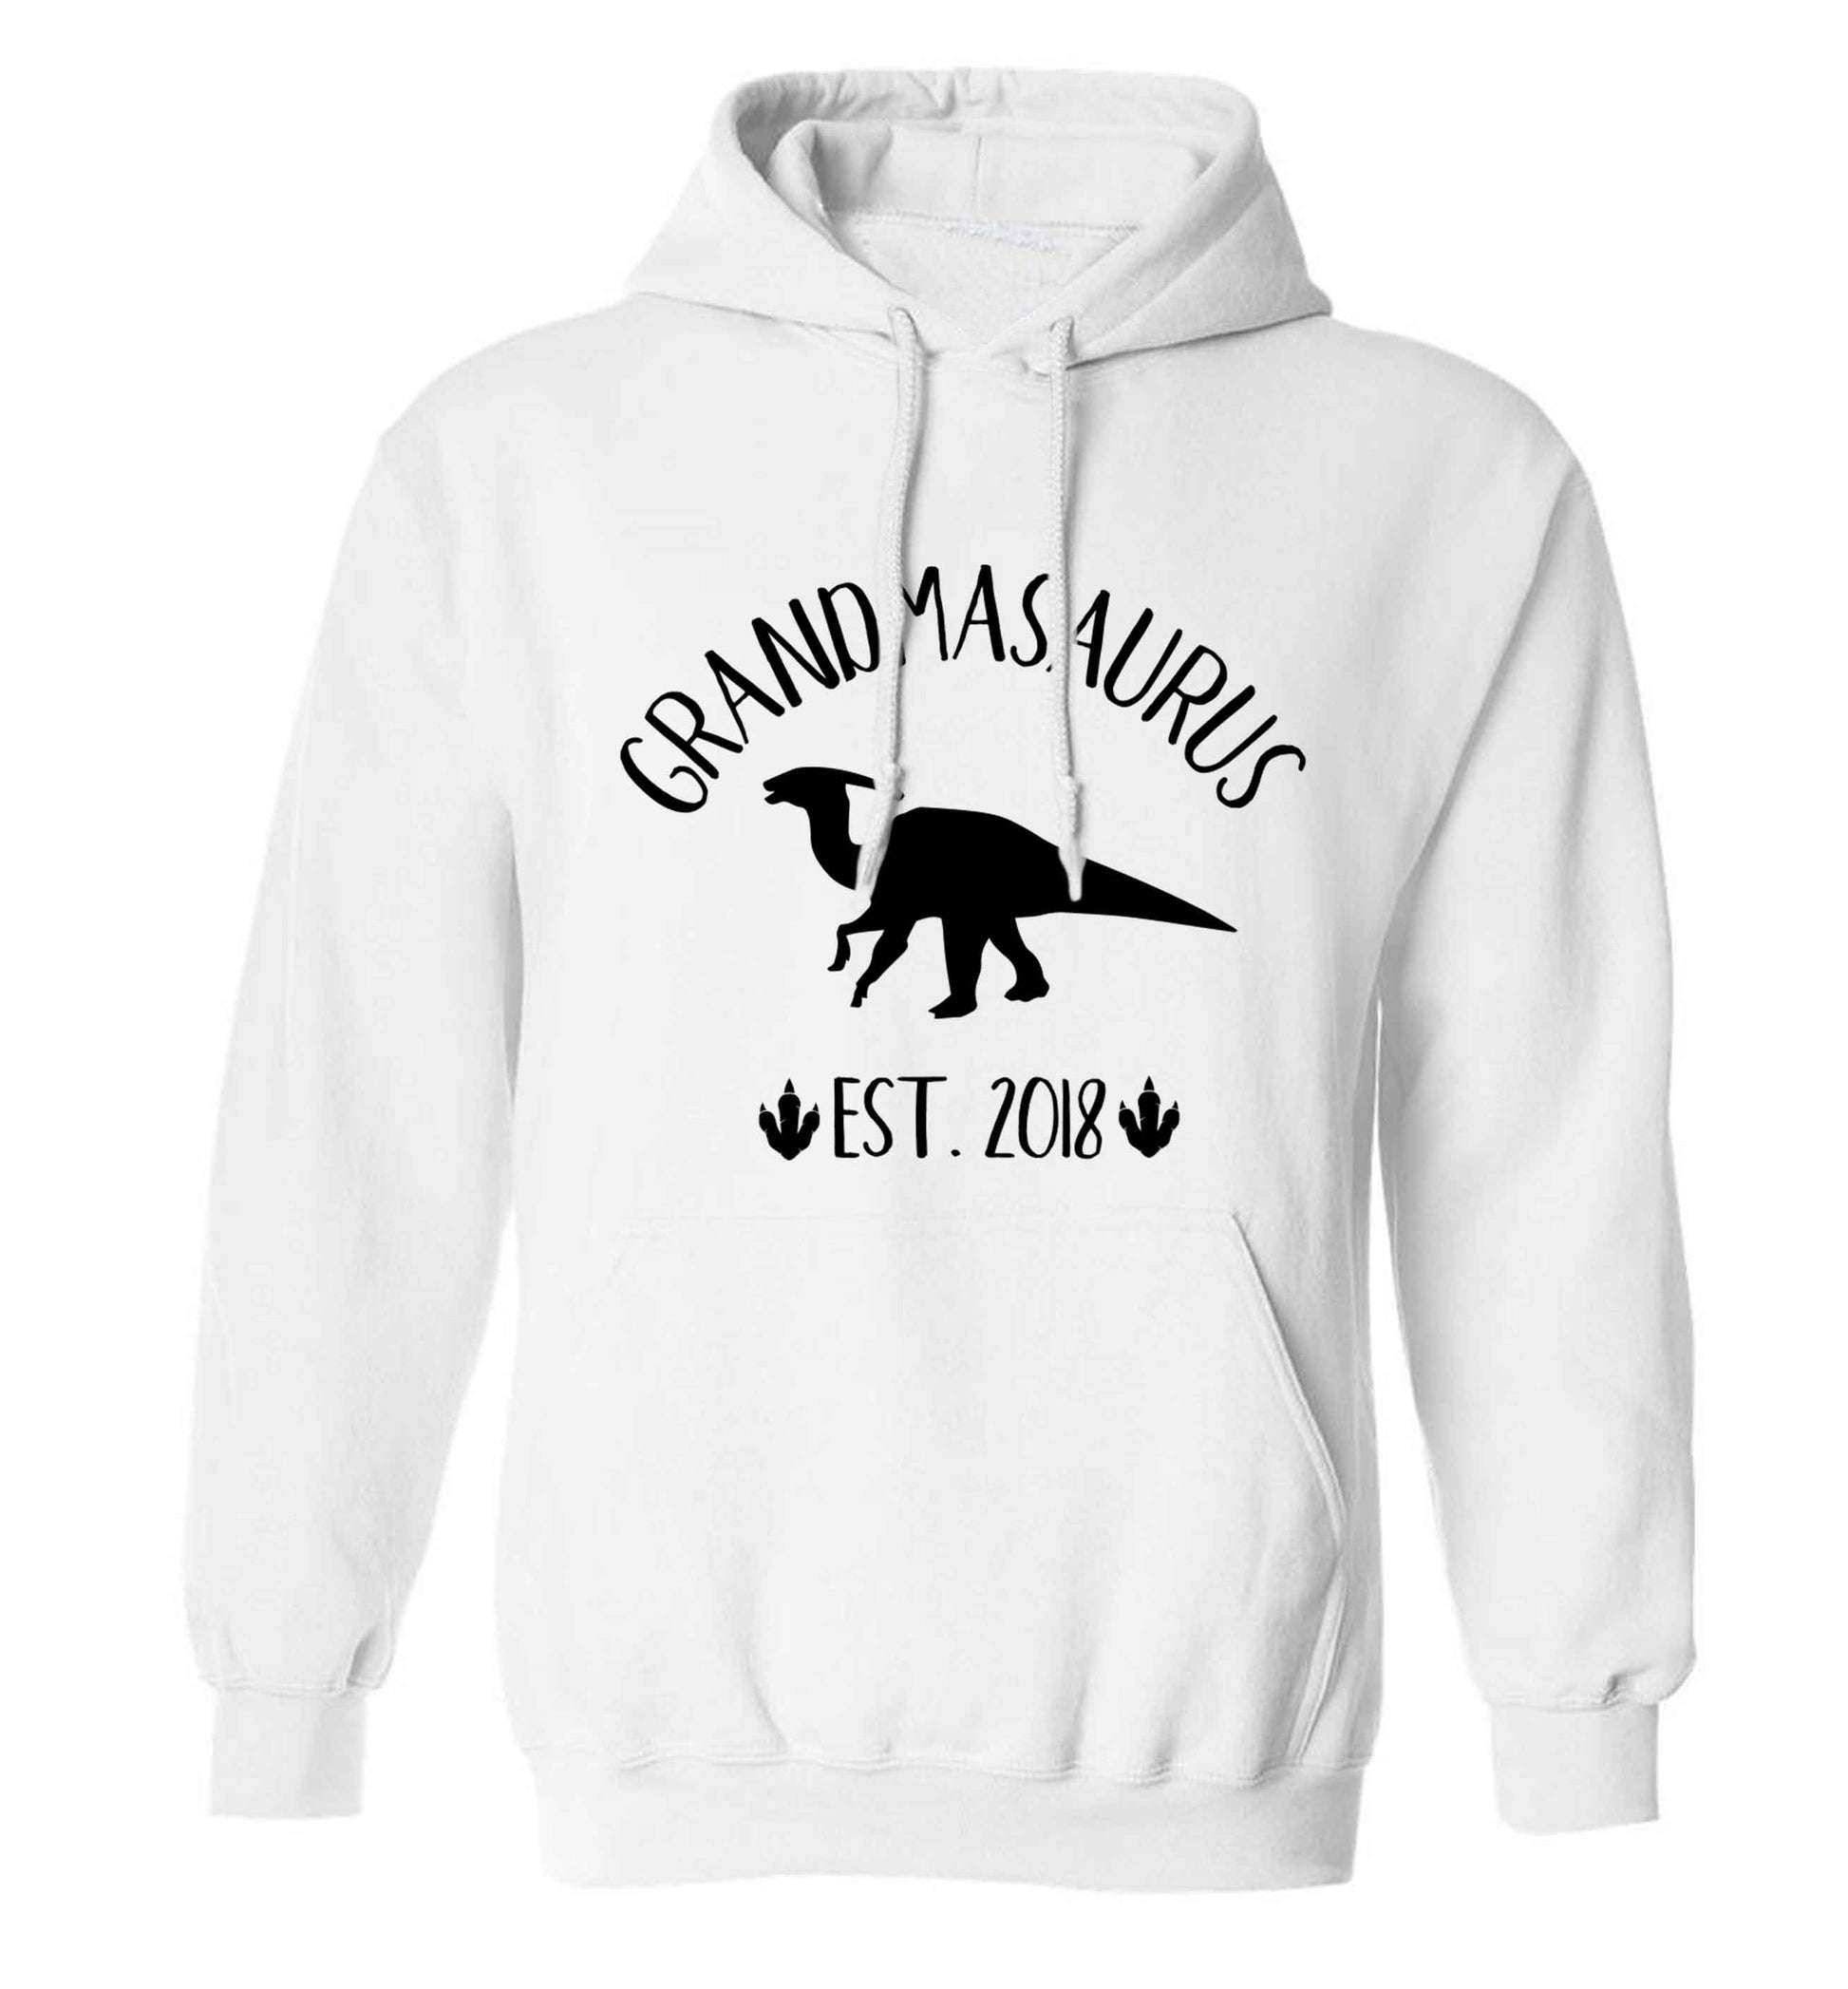 Personalised grandmasaurus since (custom date) adults unisex white hoodie 2XL